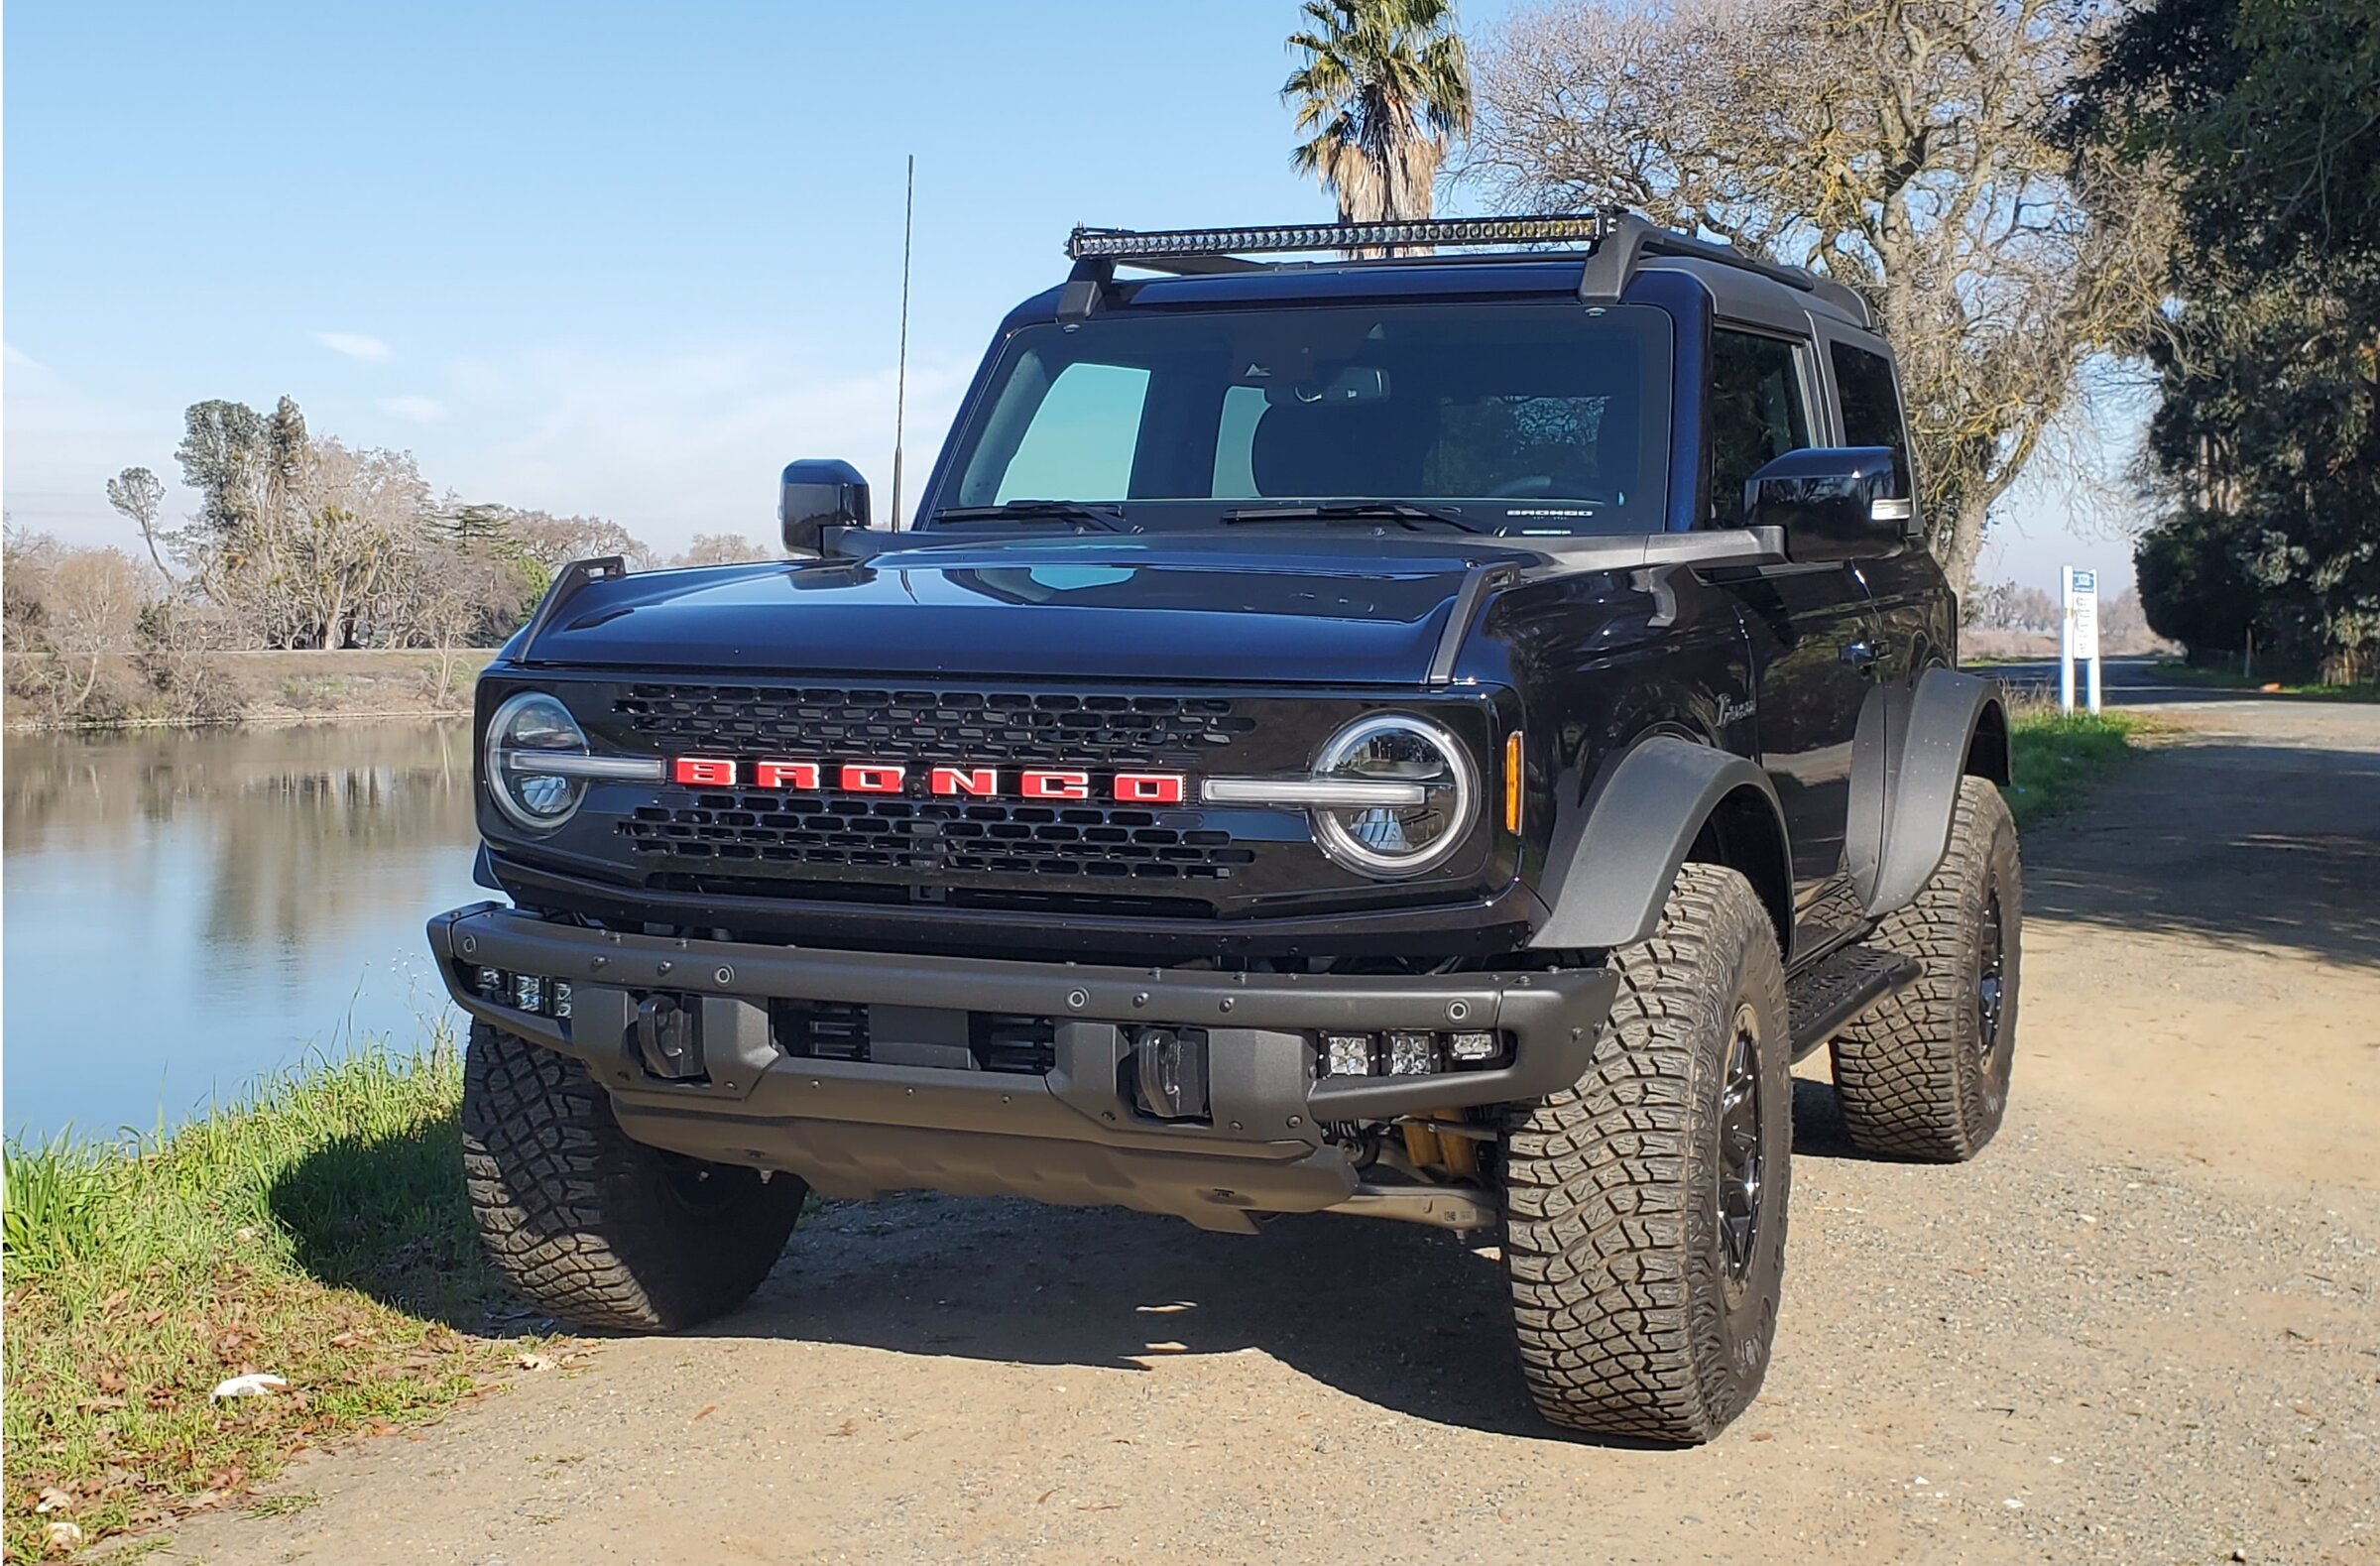 Ford Bronco Show off your Wildtrak! 20220118_113816 - Copy